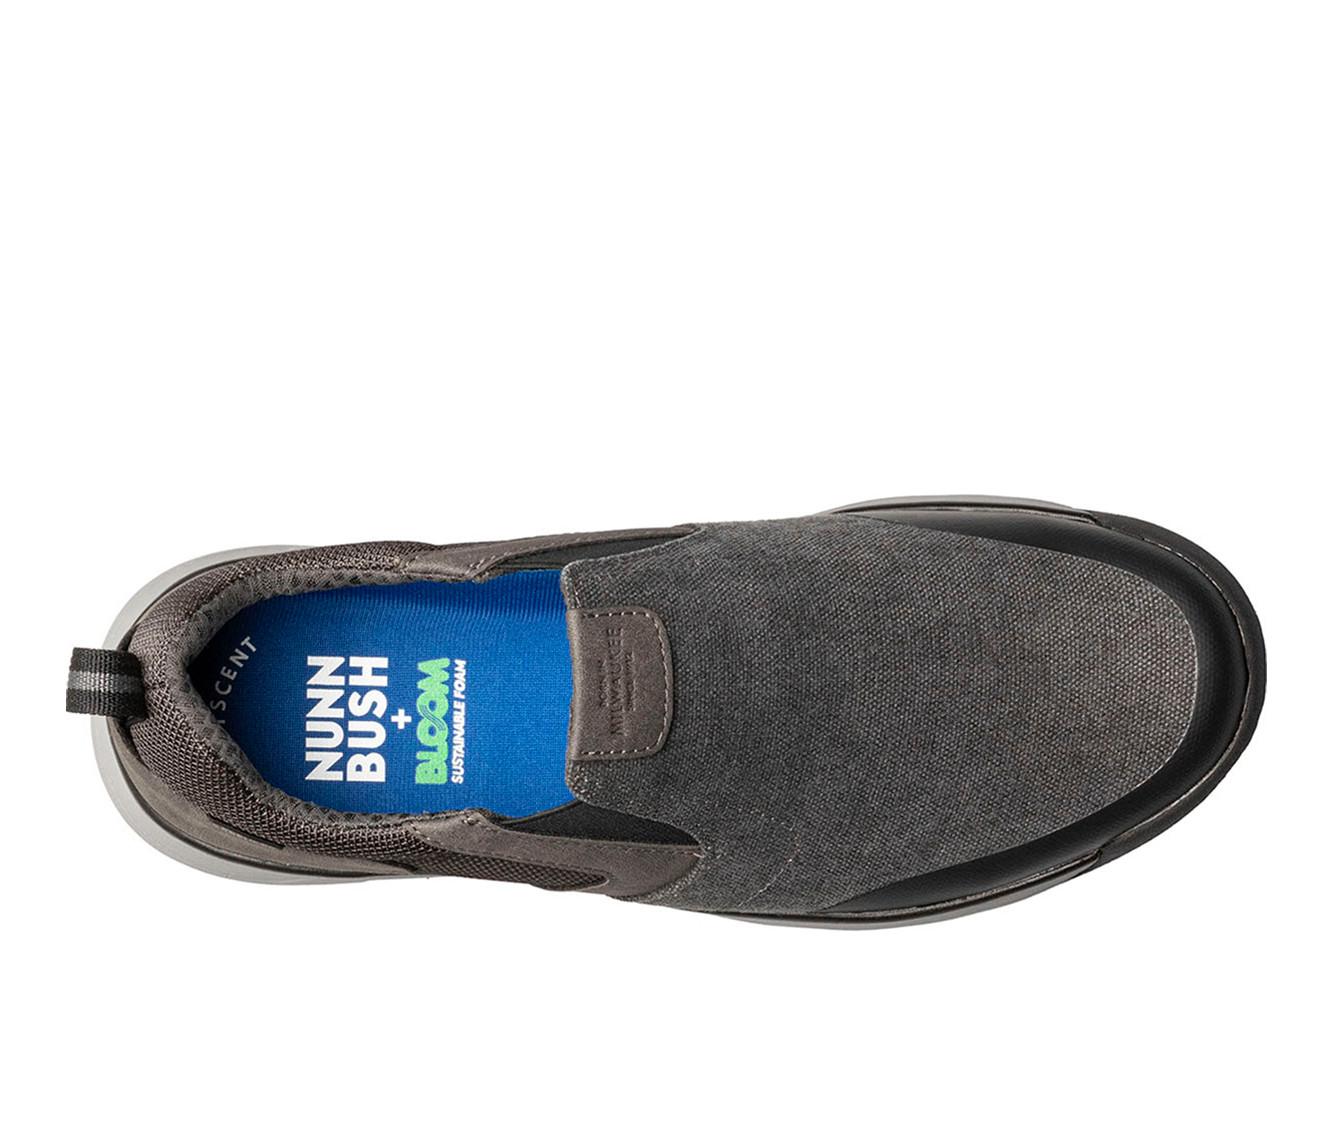 Men's Nunn Bush Sedona Canvas Moc Toe Slip-On Shoes